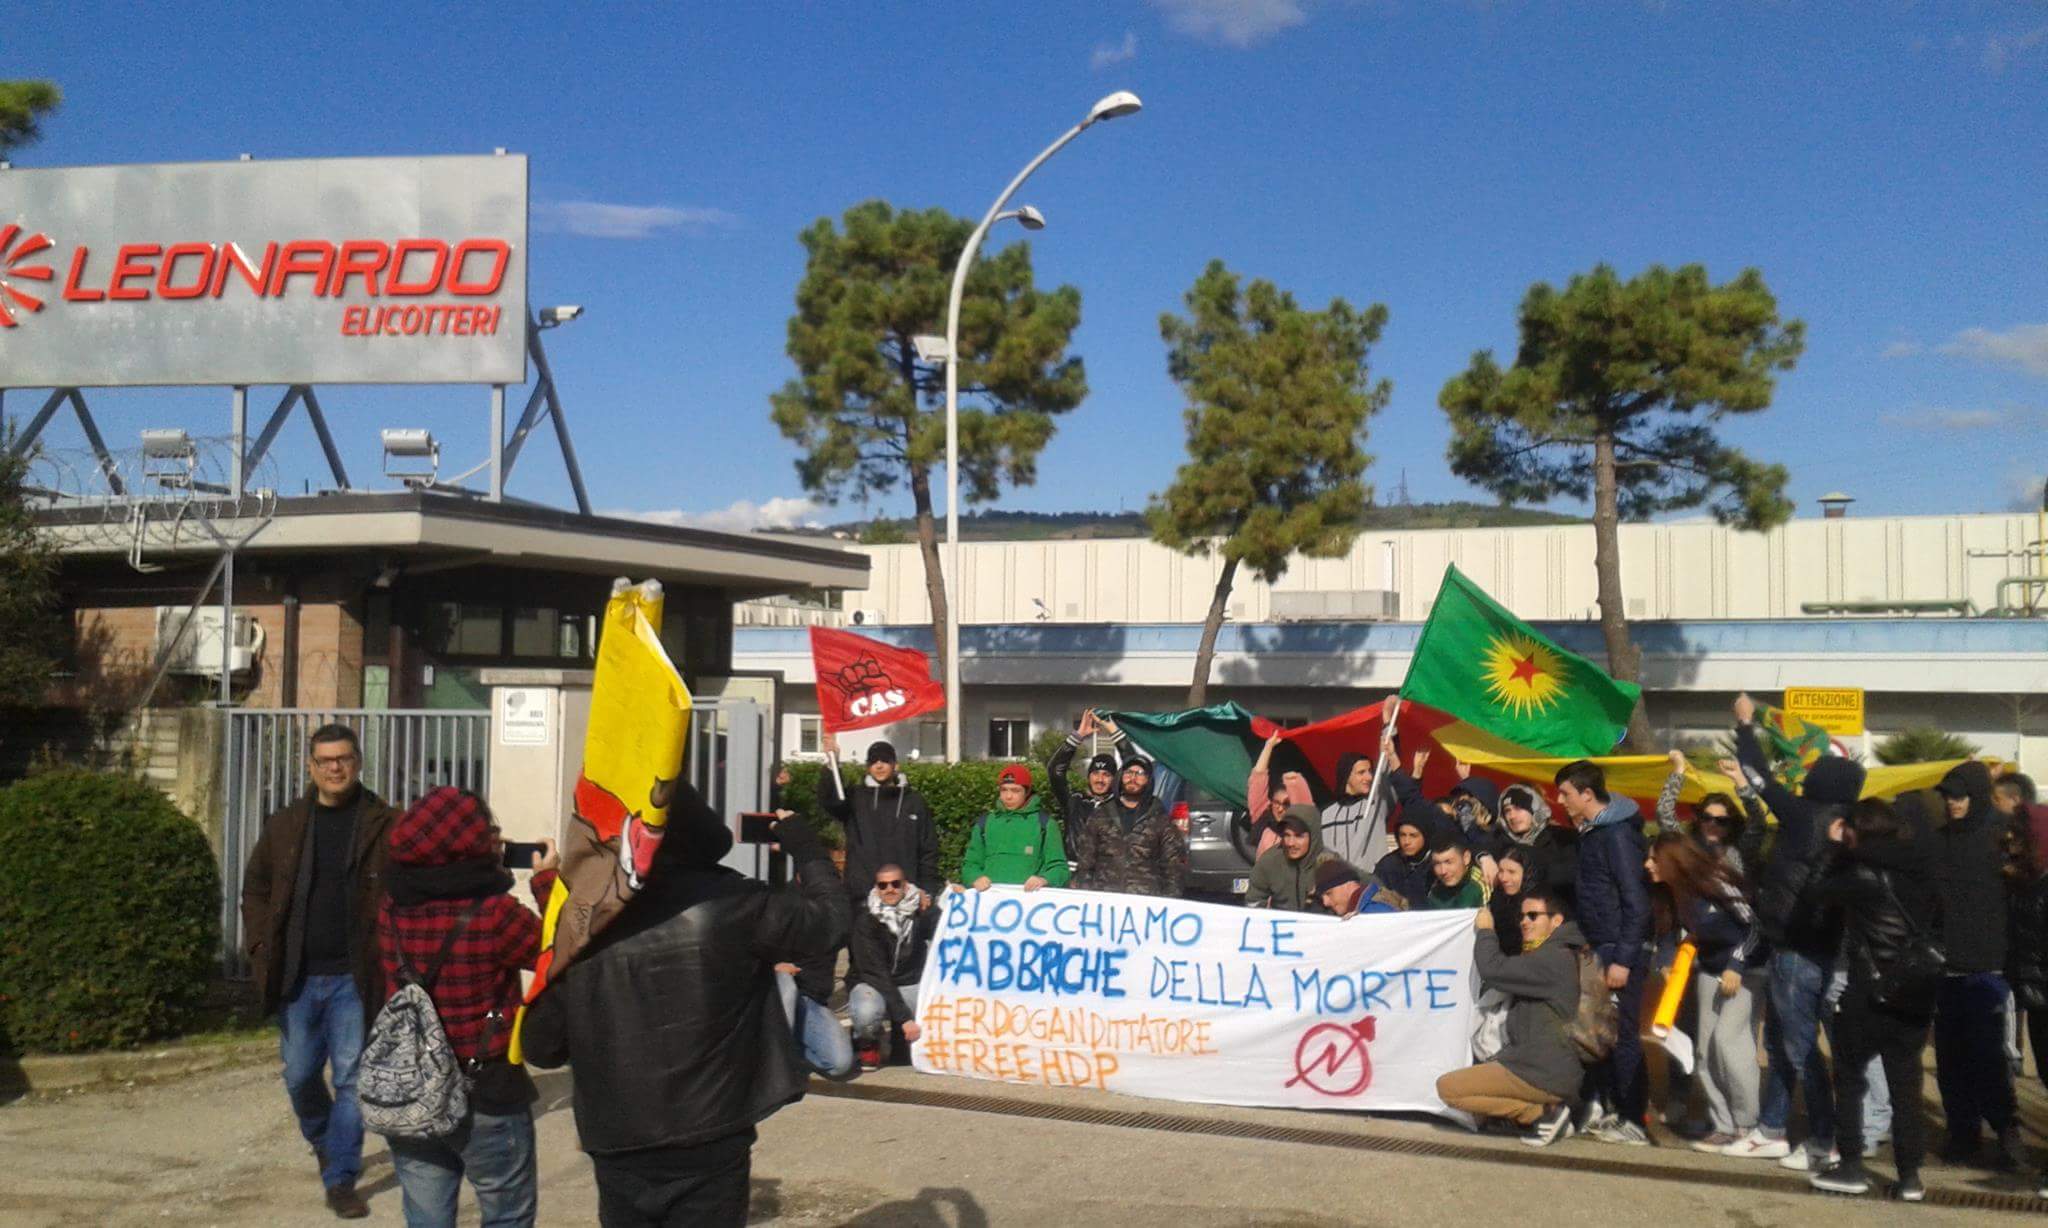 Benevento| Gli attivisti occupano l’AgustaWestland